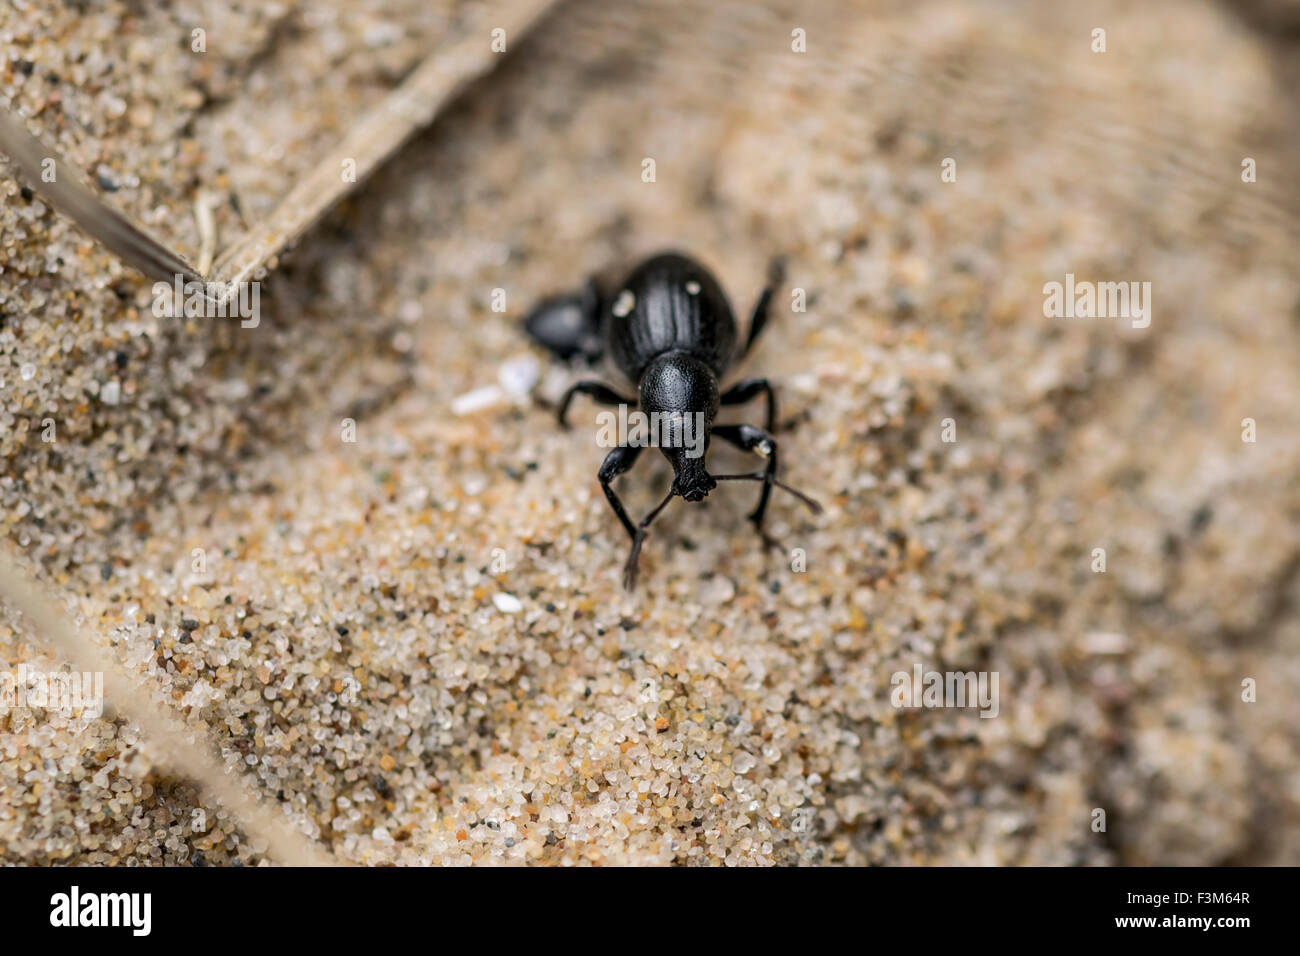 Schwarz Dünengebieten Rüsselkäfer Otiorhynchus Atroapterus auf die Sanddünen in Conwy Morfa Norden von Wales Küste. Stockfoto